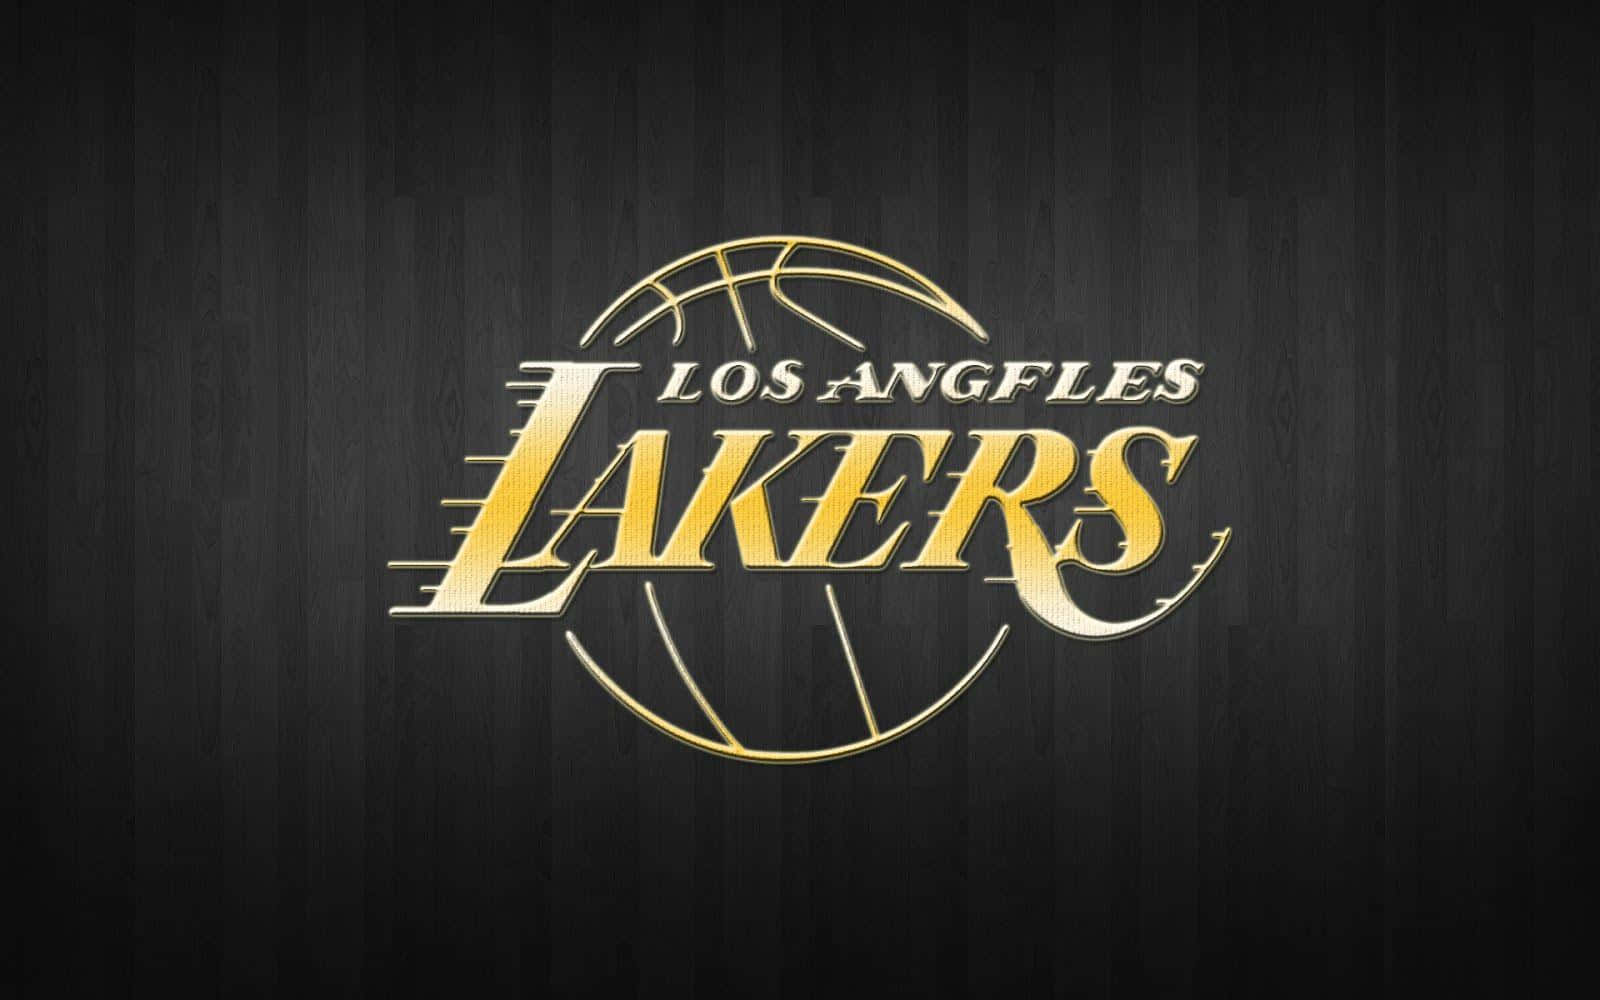 Lakers'drøm Om Sejr Er Stadig I Live Og Godt I Staples Centeret.